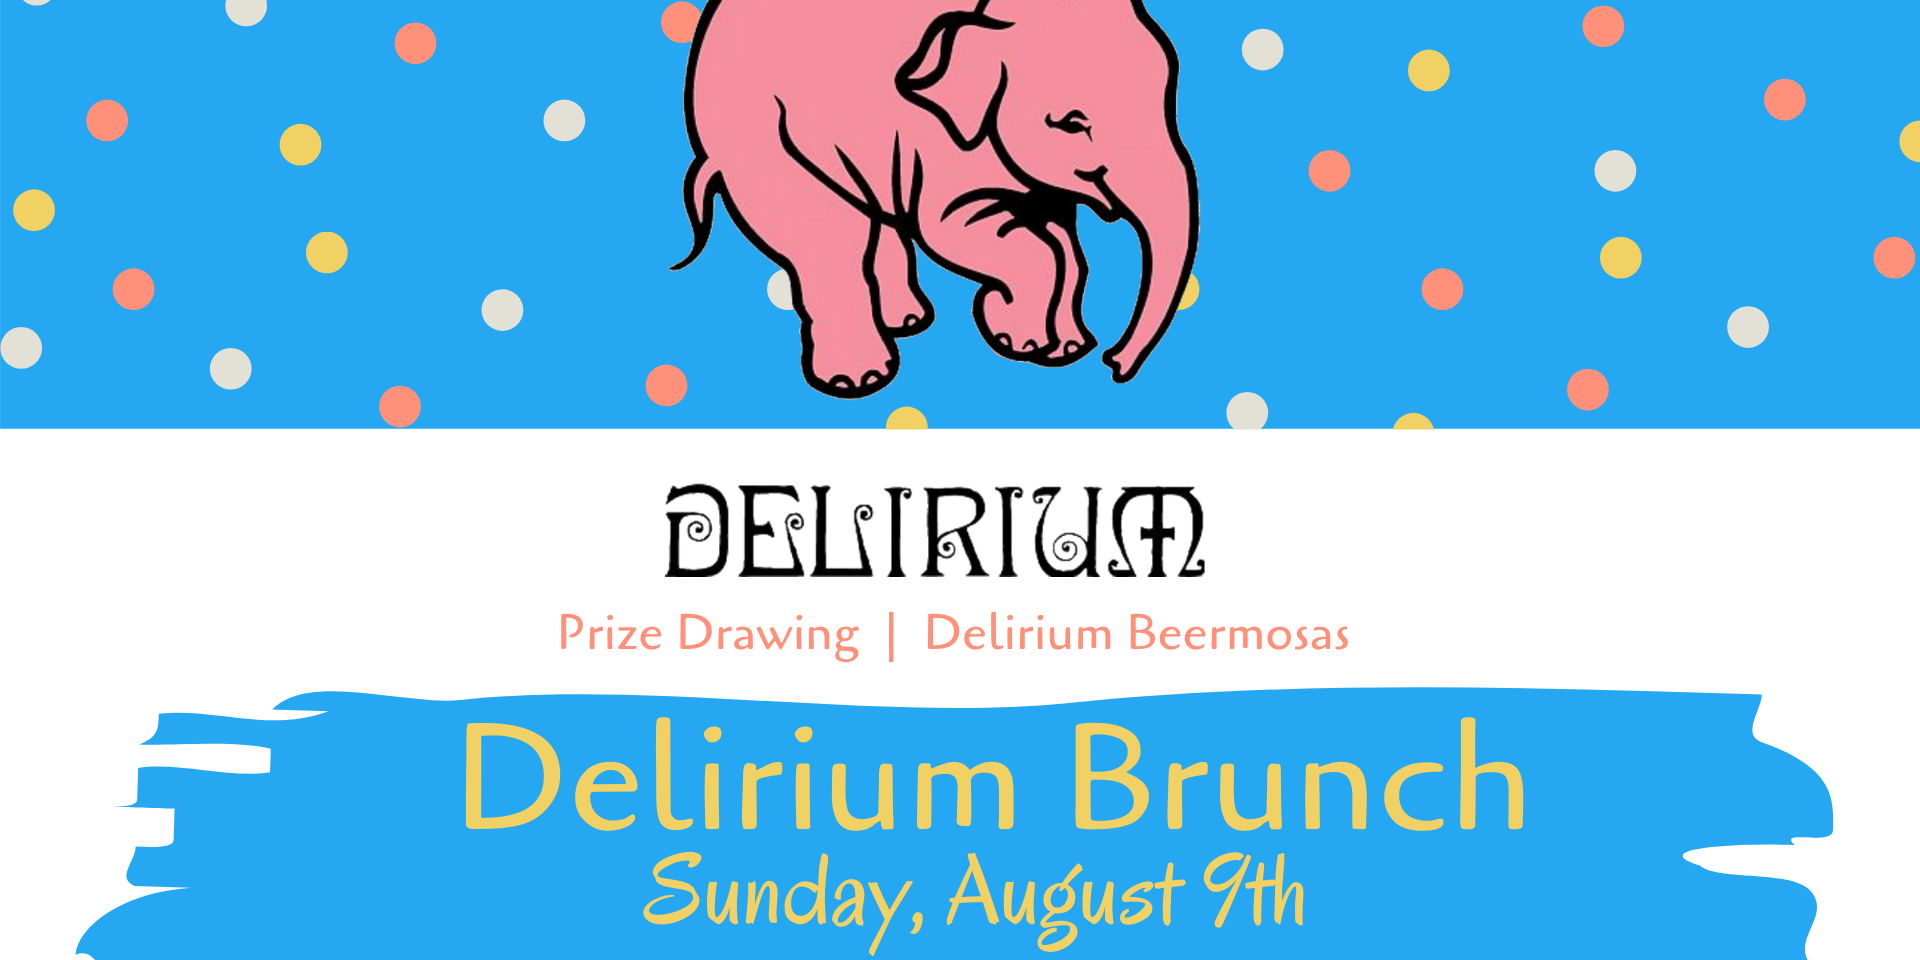 Delirium Brunch promotional image